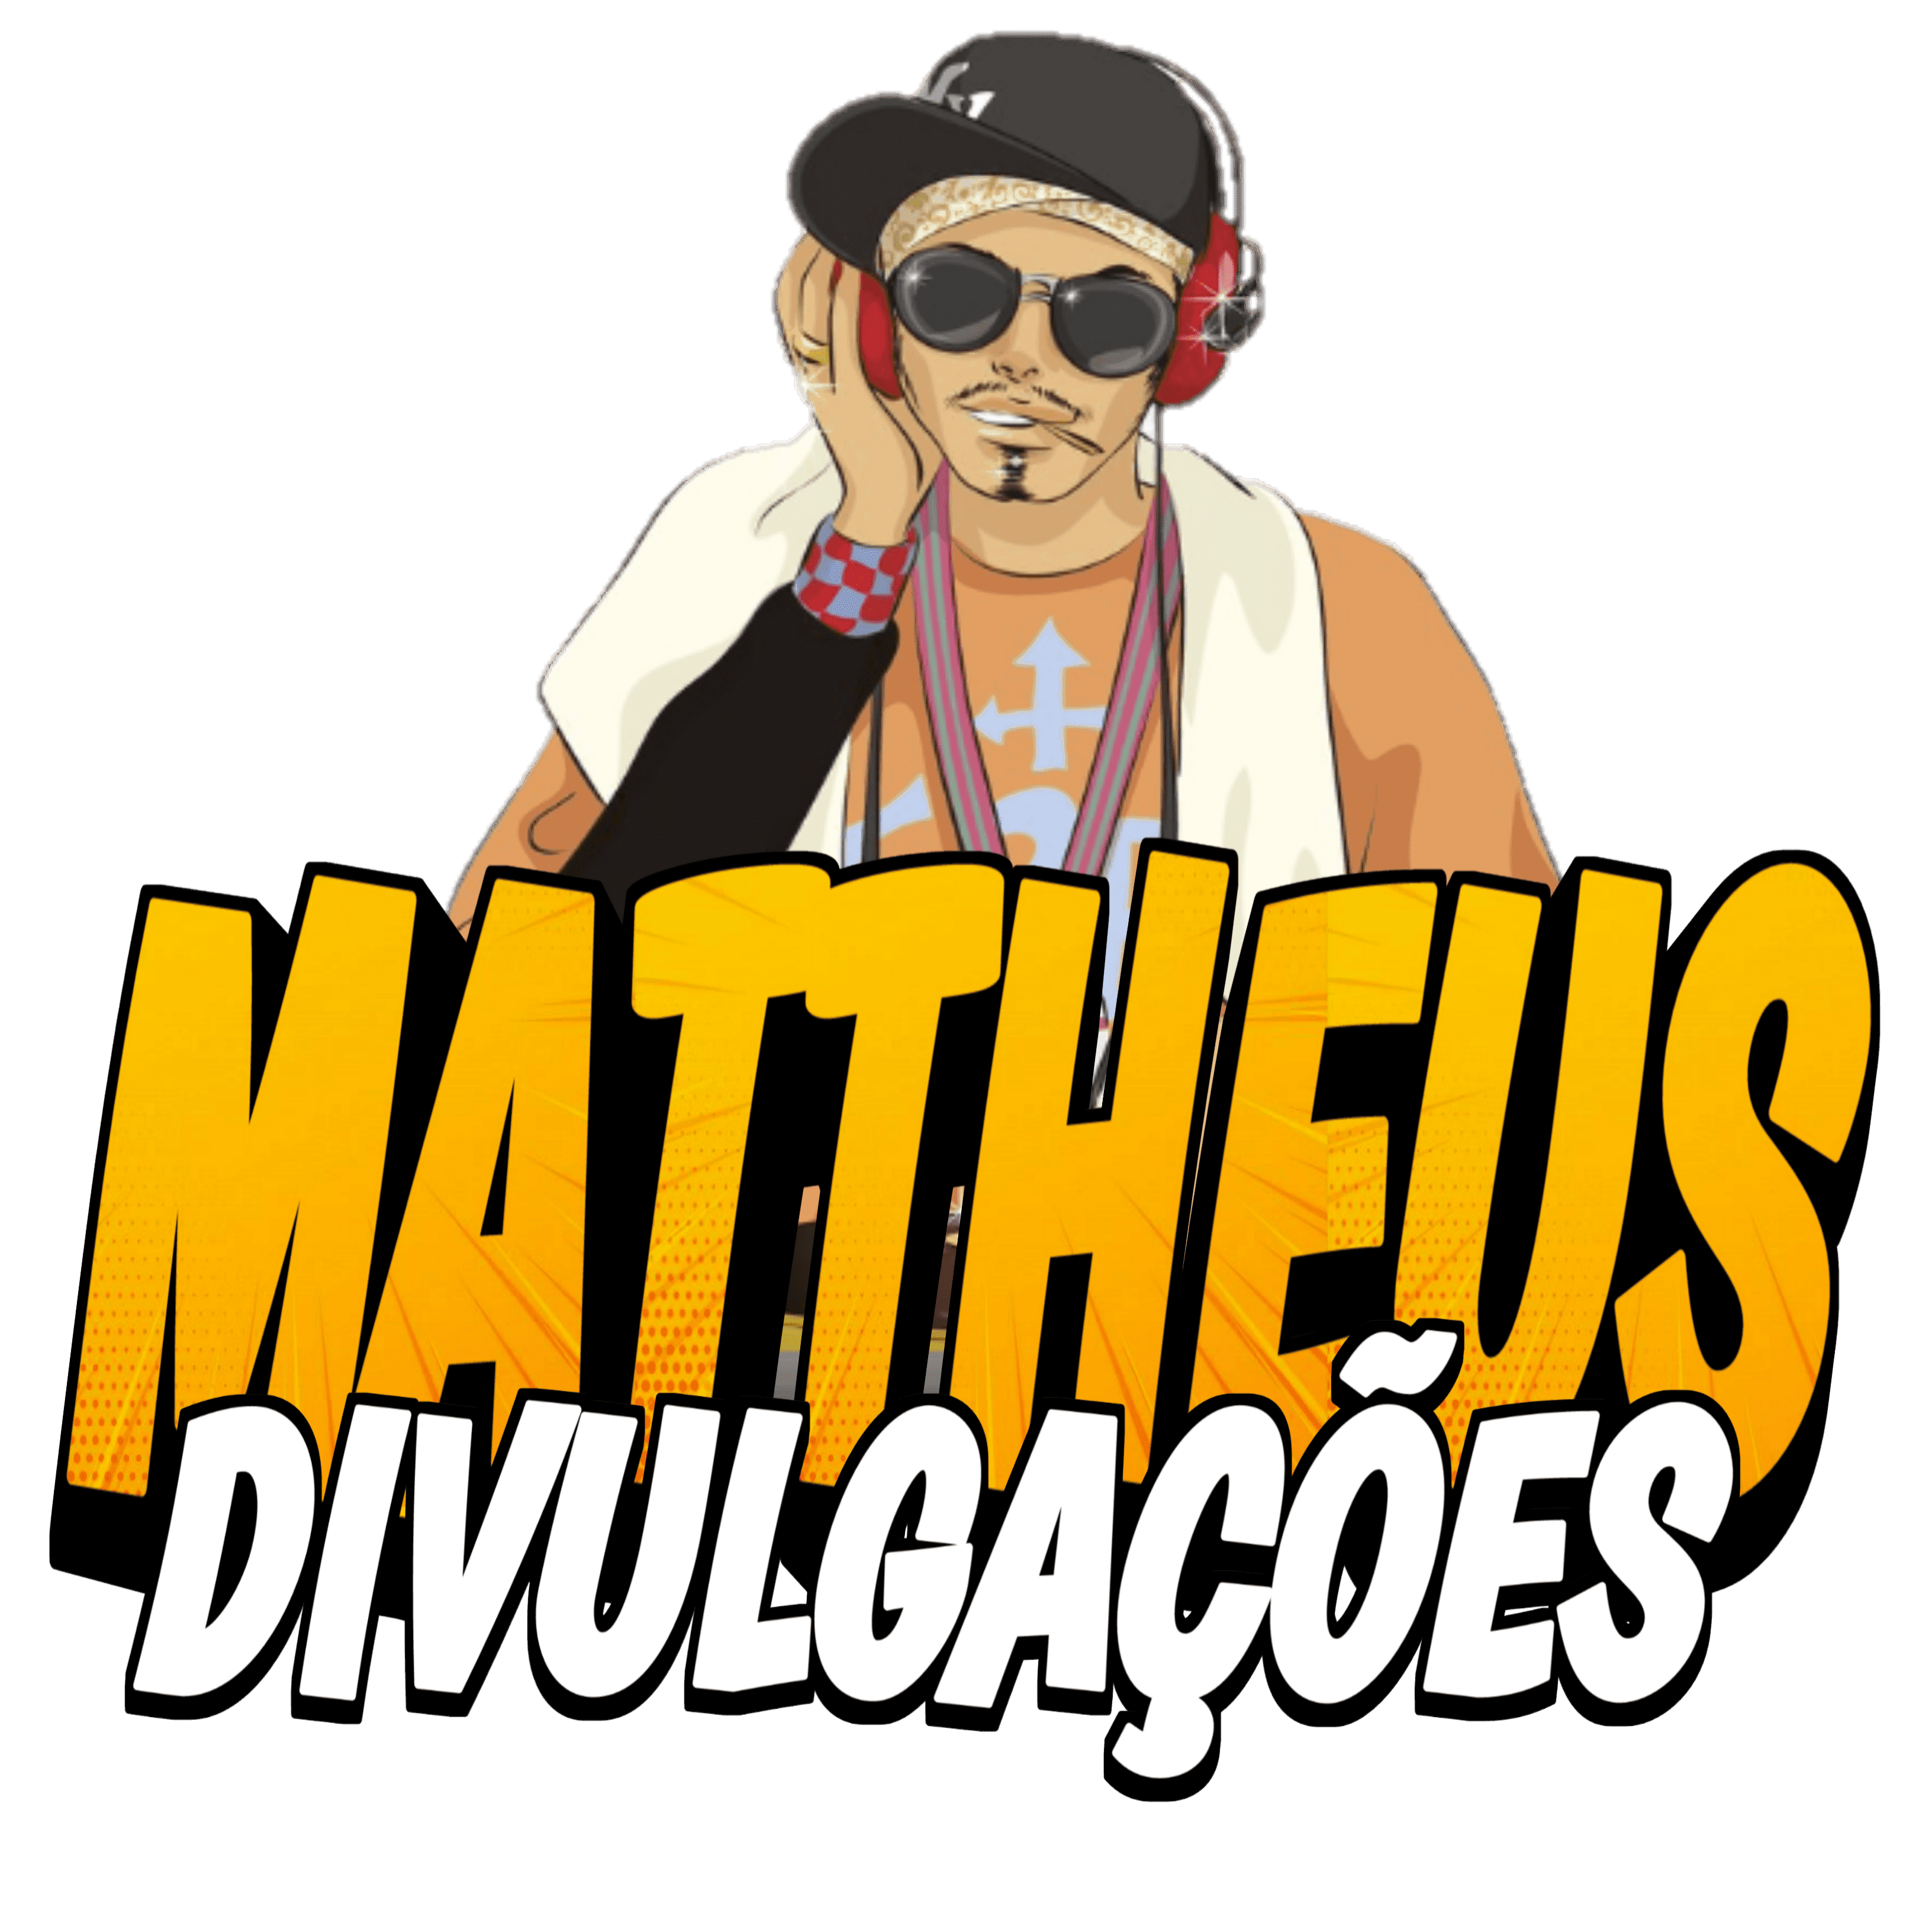 Mattheus Cds Divulgações